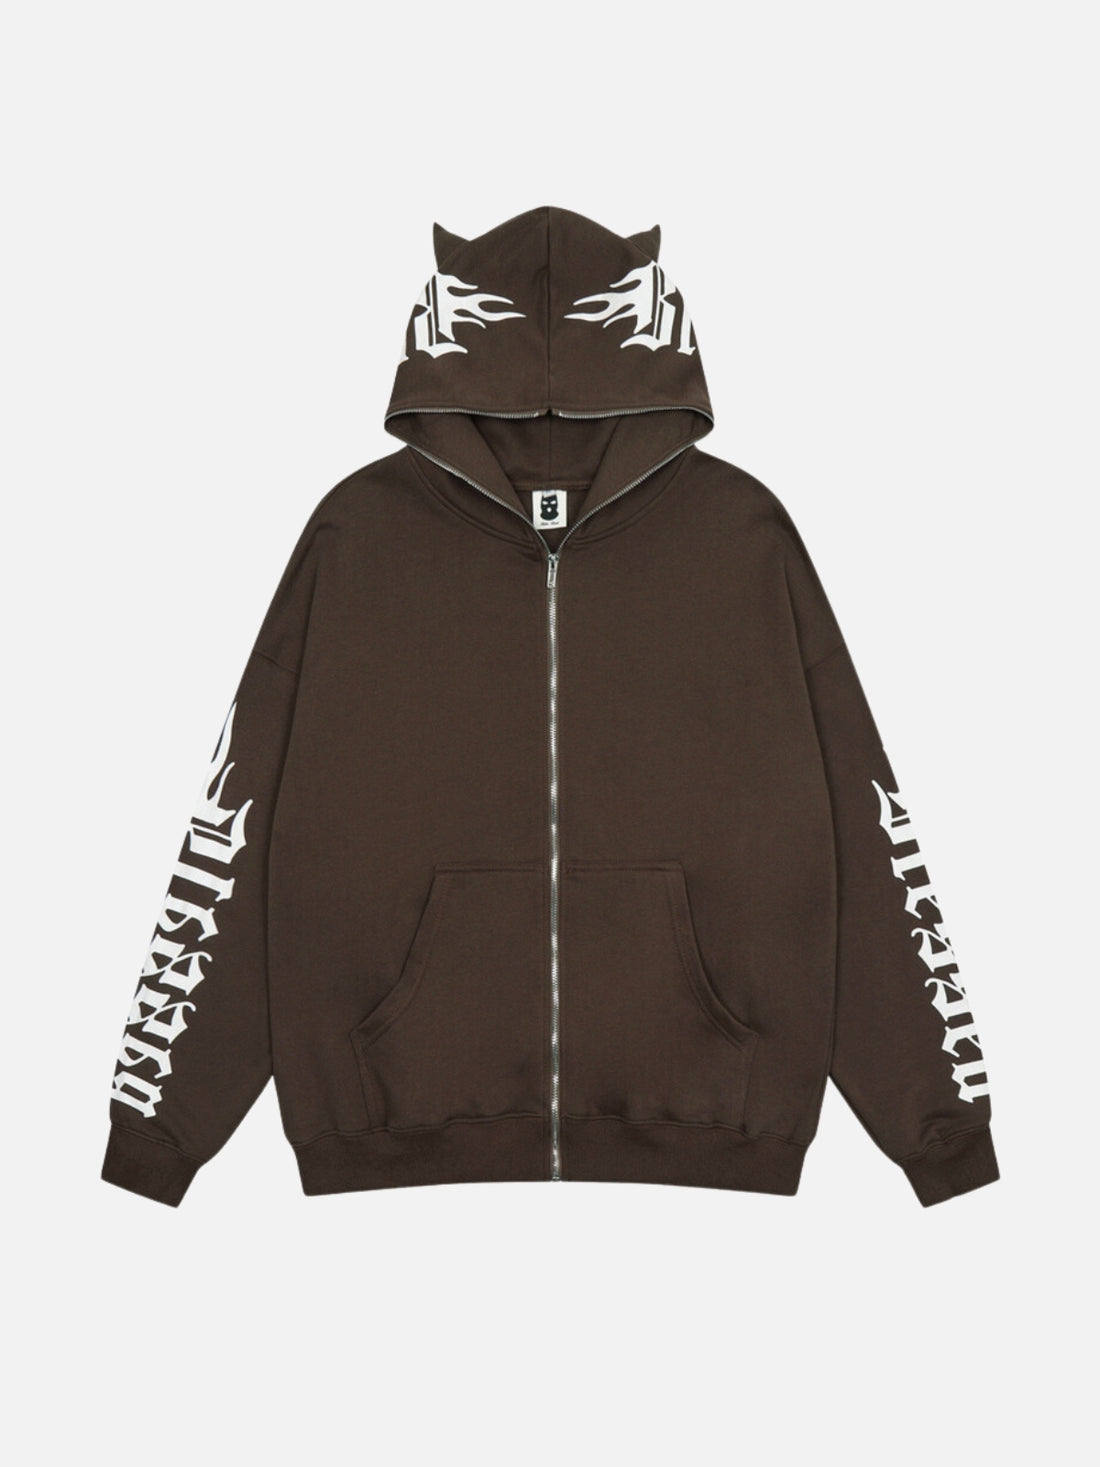 CATTIE - Oversized Zip Up Hoodie Brown | Teenwear.eu